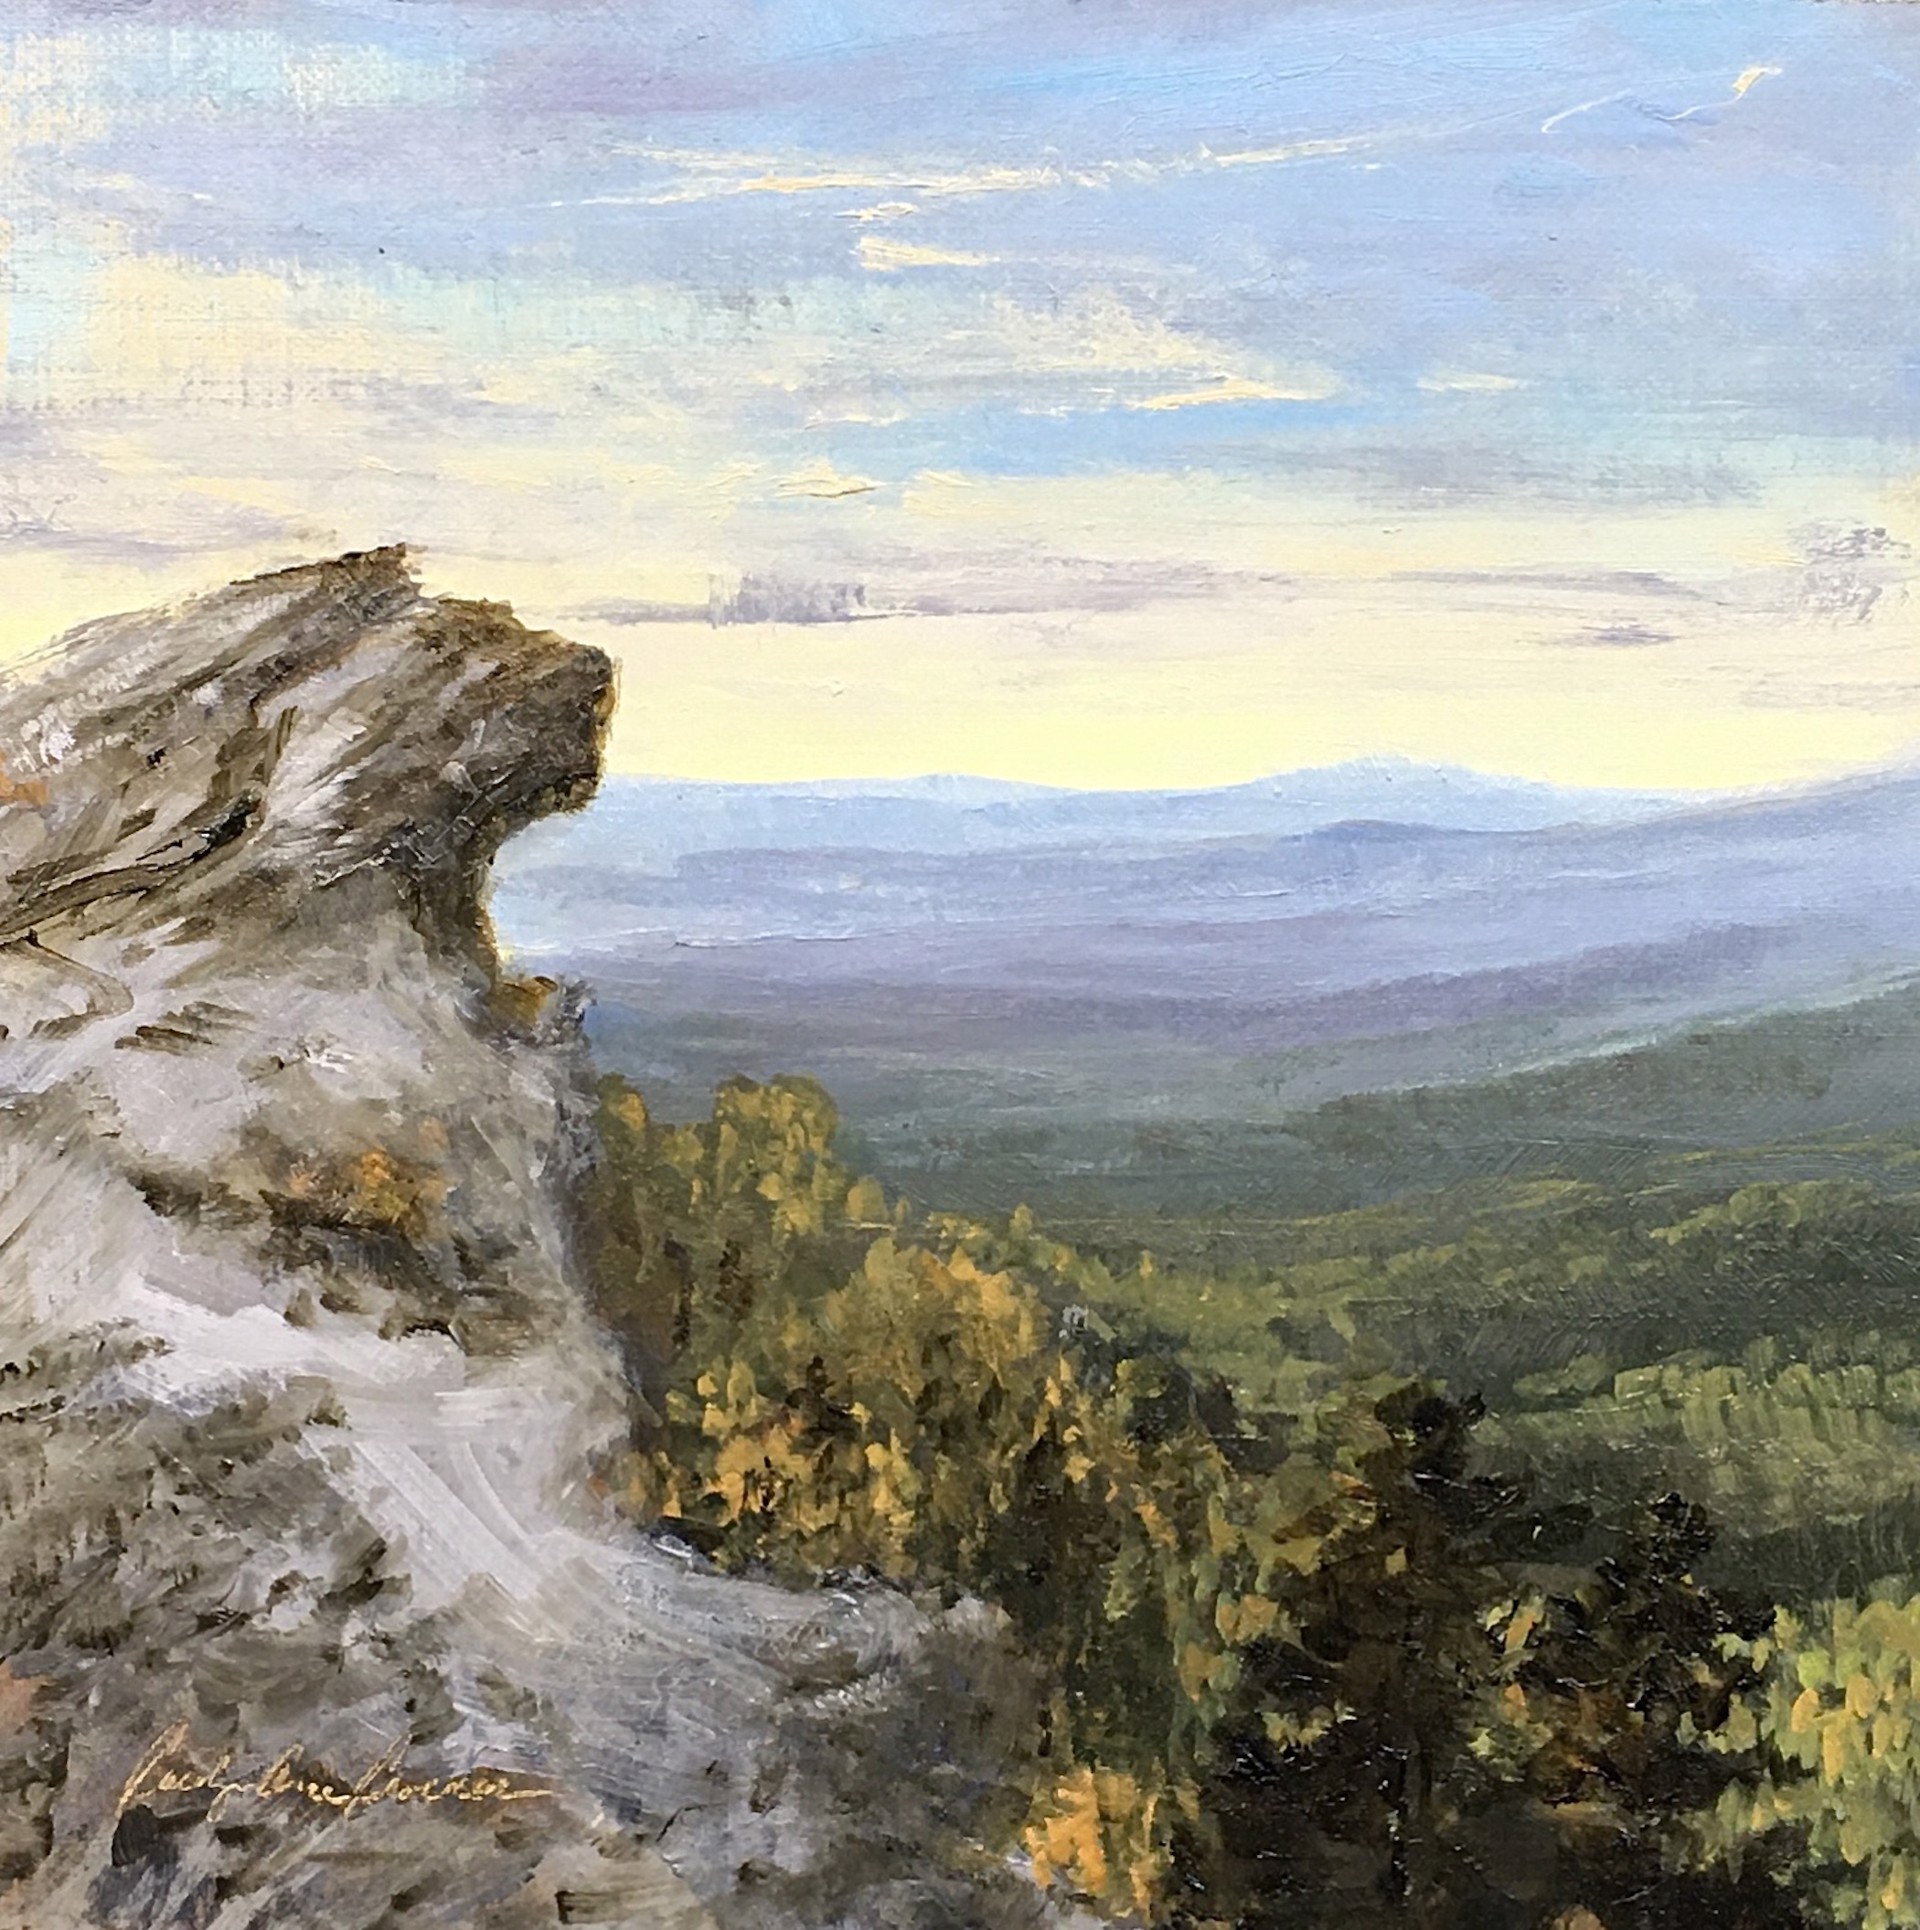 Blowing Rock View by Carolyn Crocker (Rue)